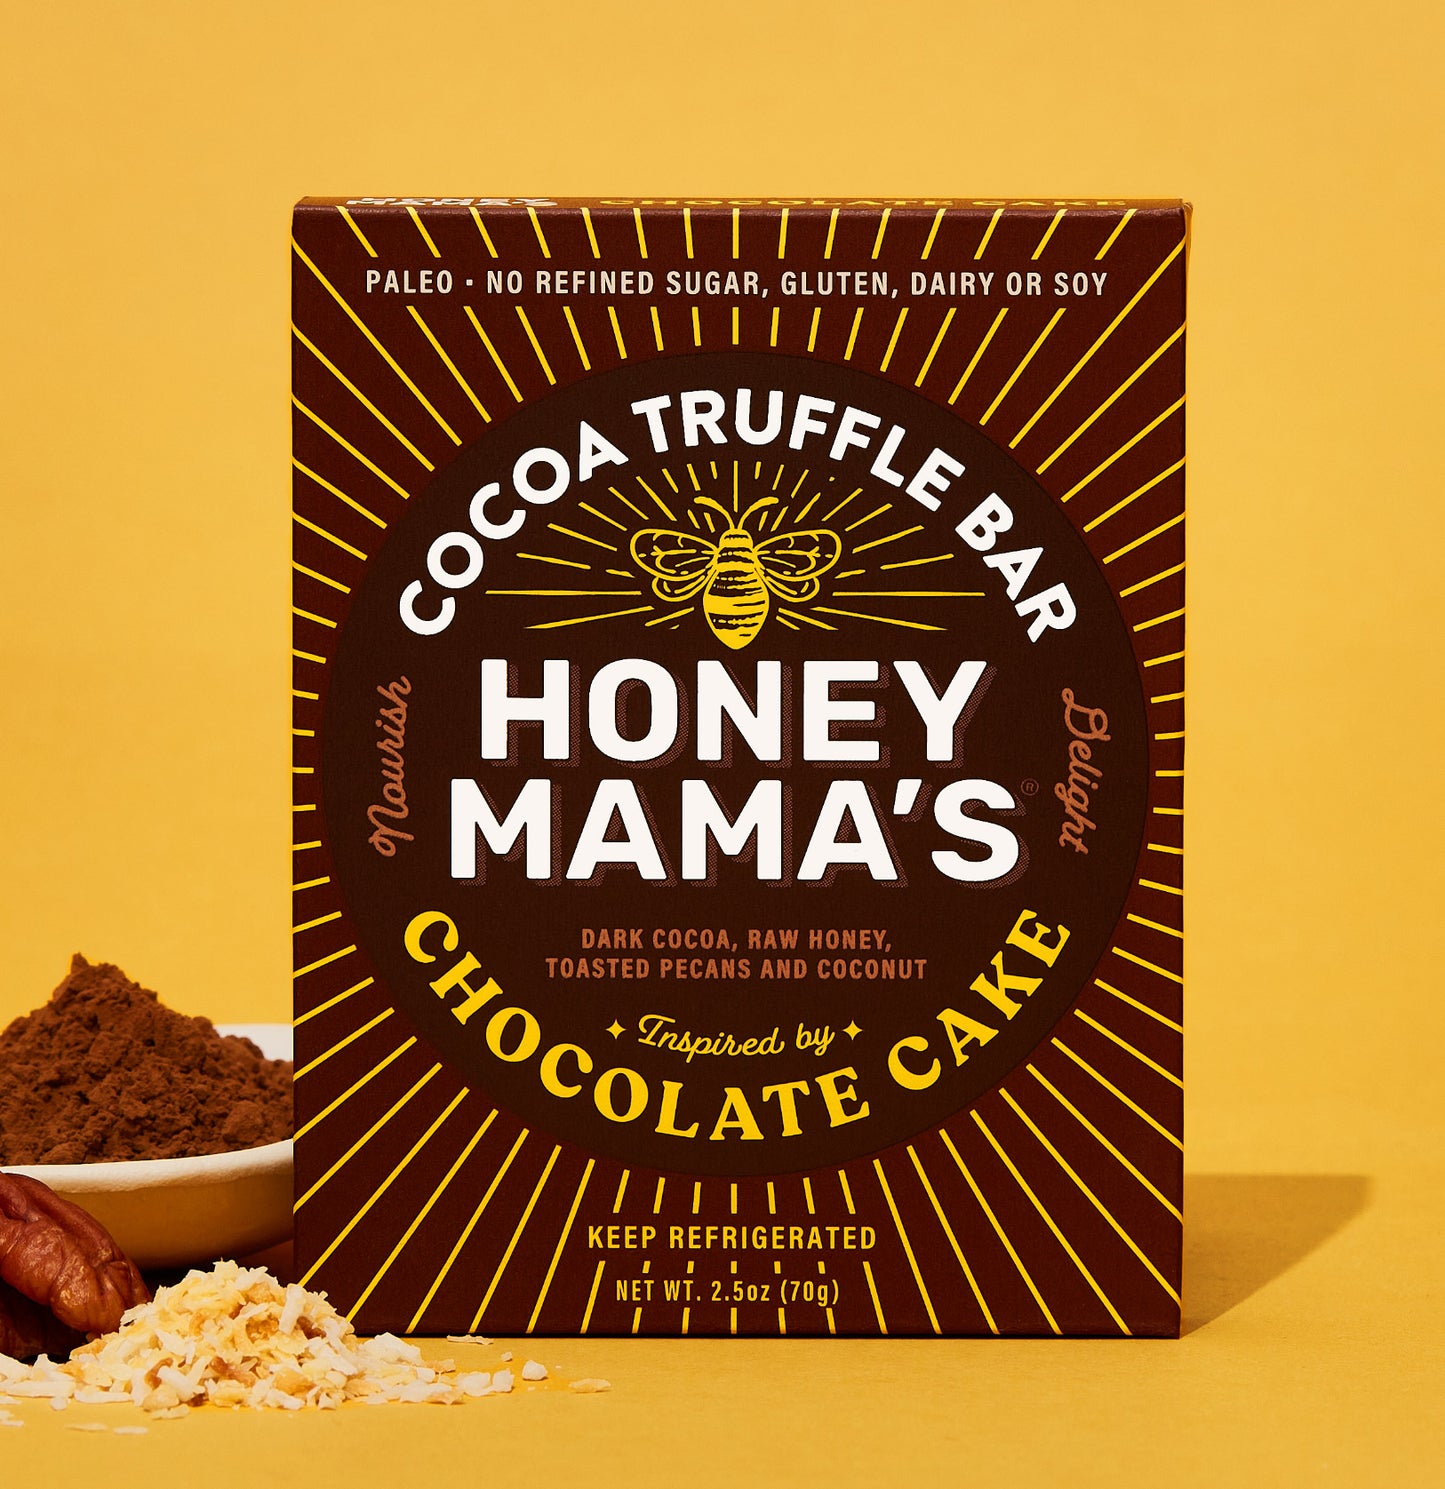 Honey Mama's New Carrot Cake Blonde Truffle Bar is Here